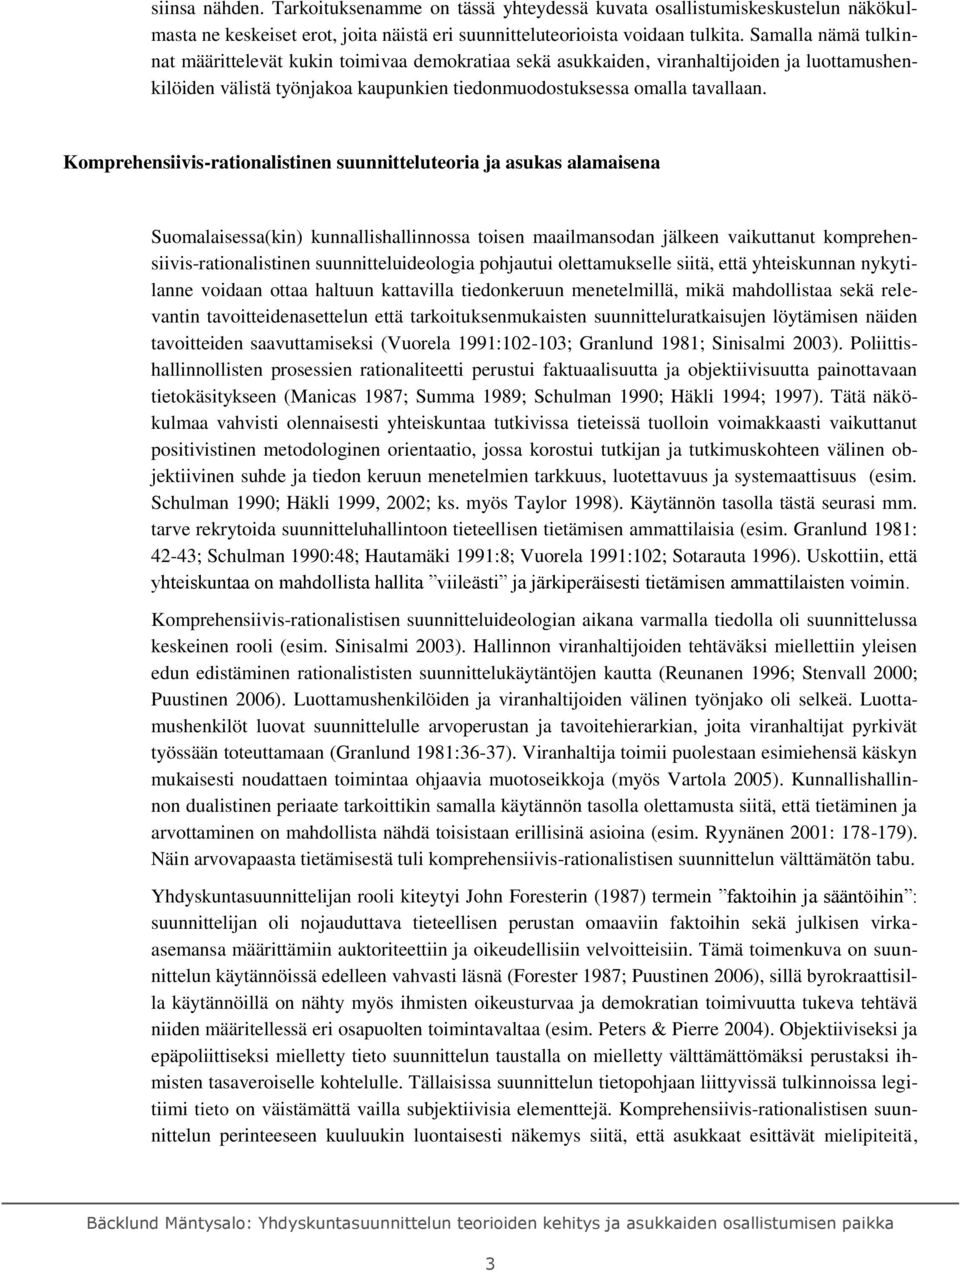 Komprehensiivis-rationalistinen suunnitteluteoria ja asukas alamaisena Suomalaisessa(kin) kunnallishallinnossa toisen maailmansodan jälkeen vaikuttanut komprehensiivis-rationalistinen